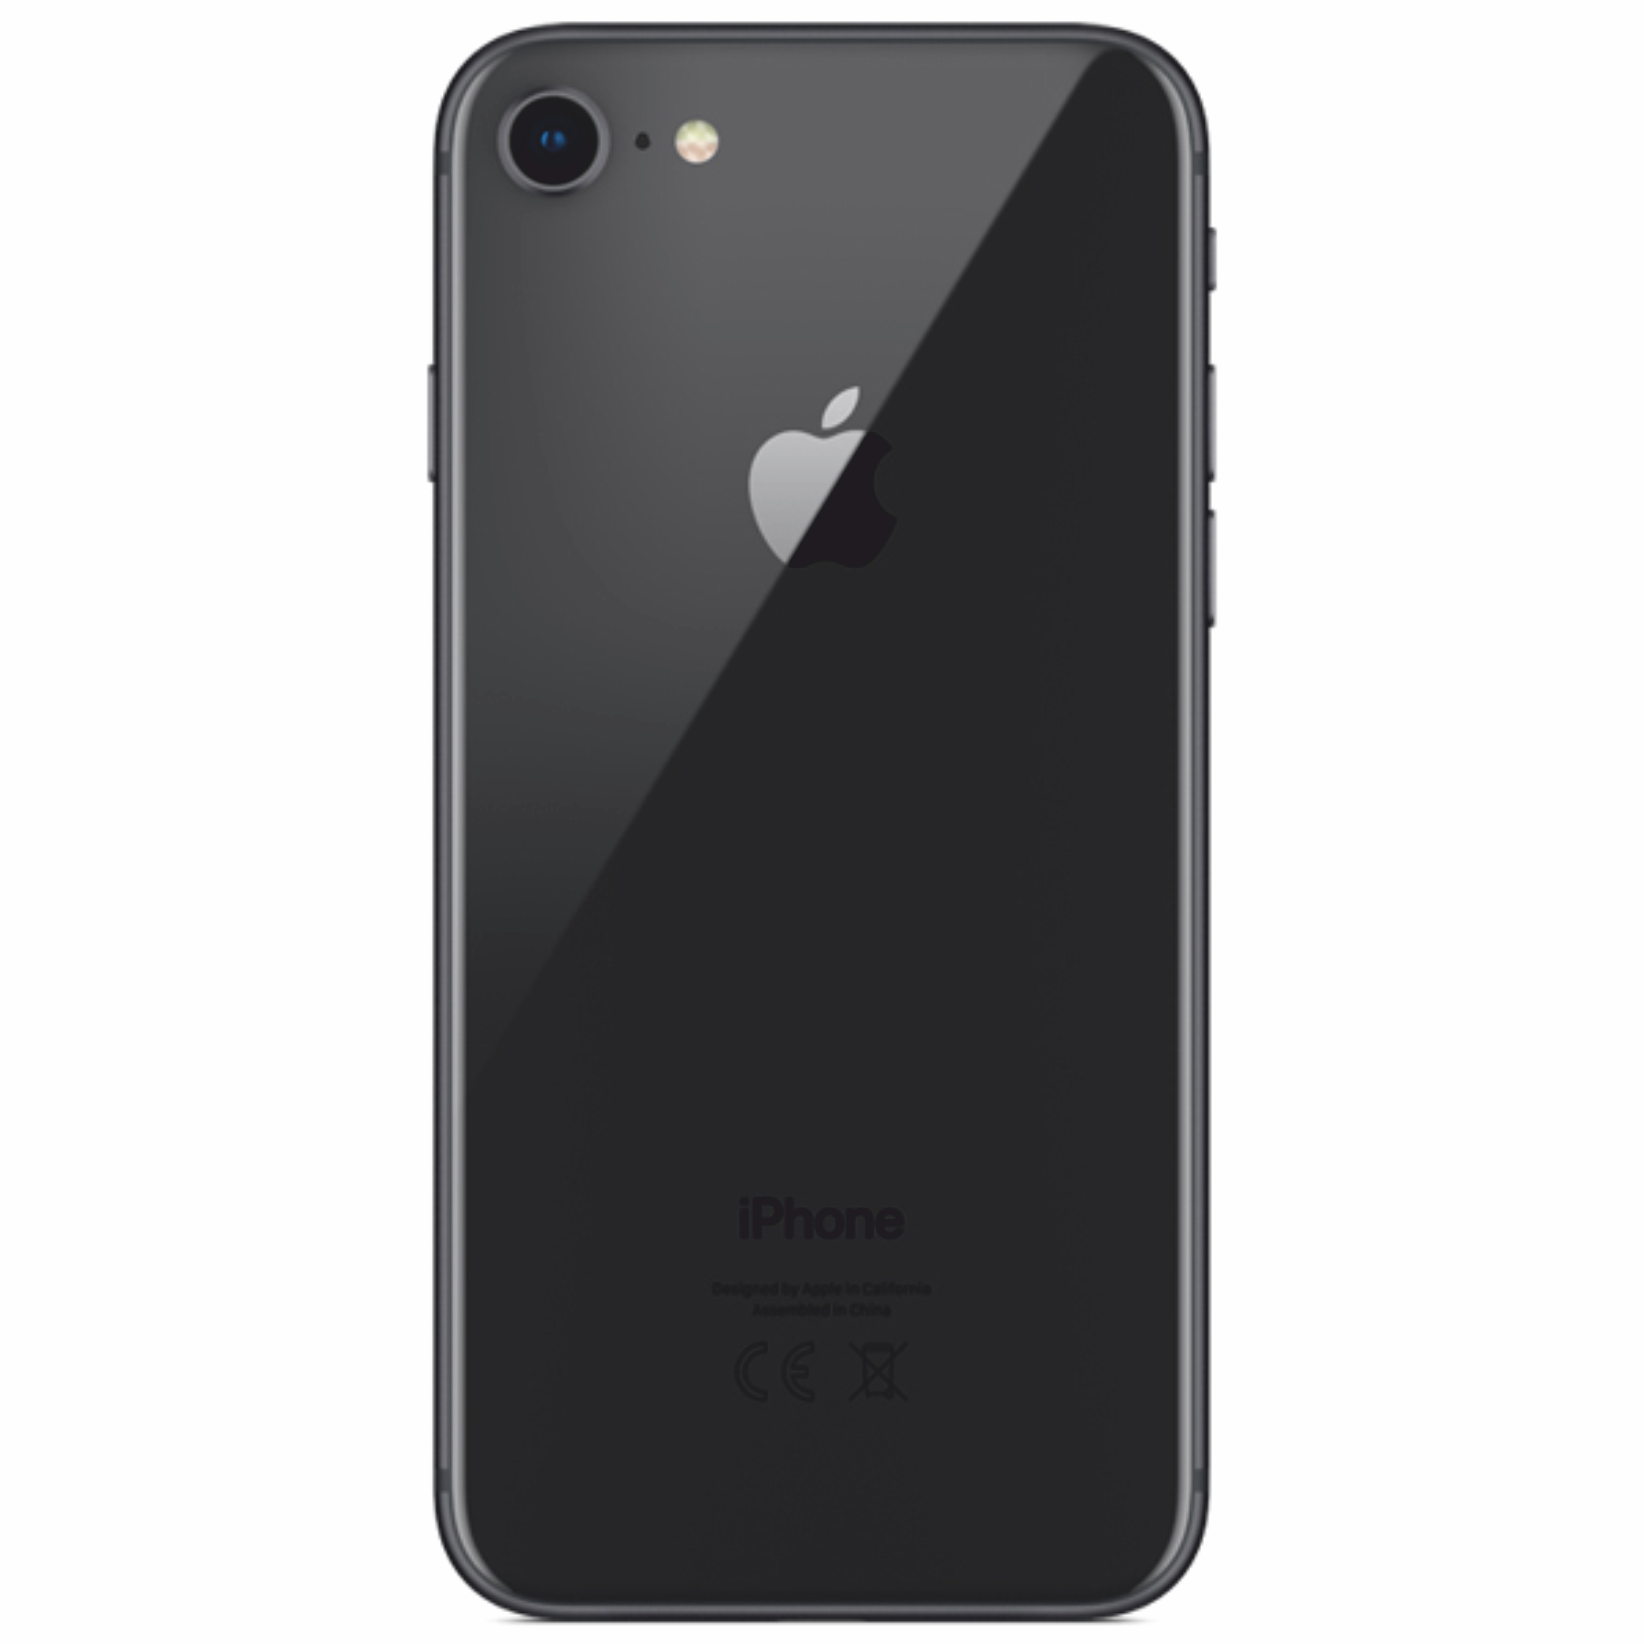 Лайфон. Iphone x Space Gray 256gb. Смартфон Apple iphone XR 64gb. Iphone XR 64gb Black. Apple iphone 8 64gb Space Gray.